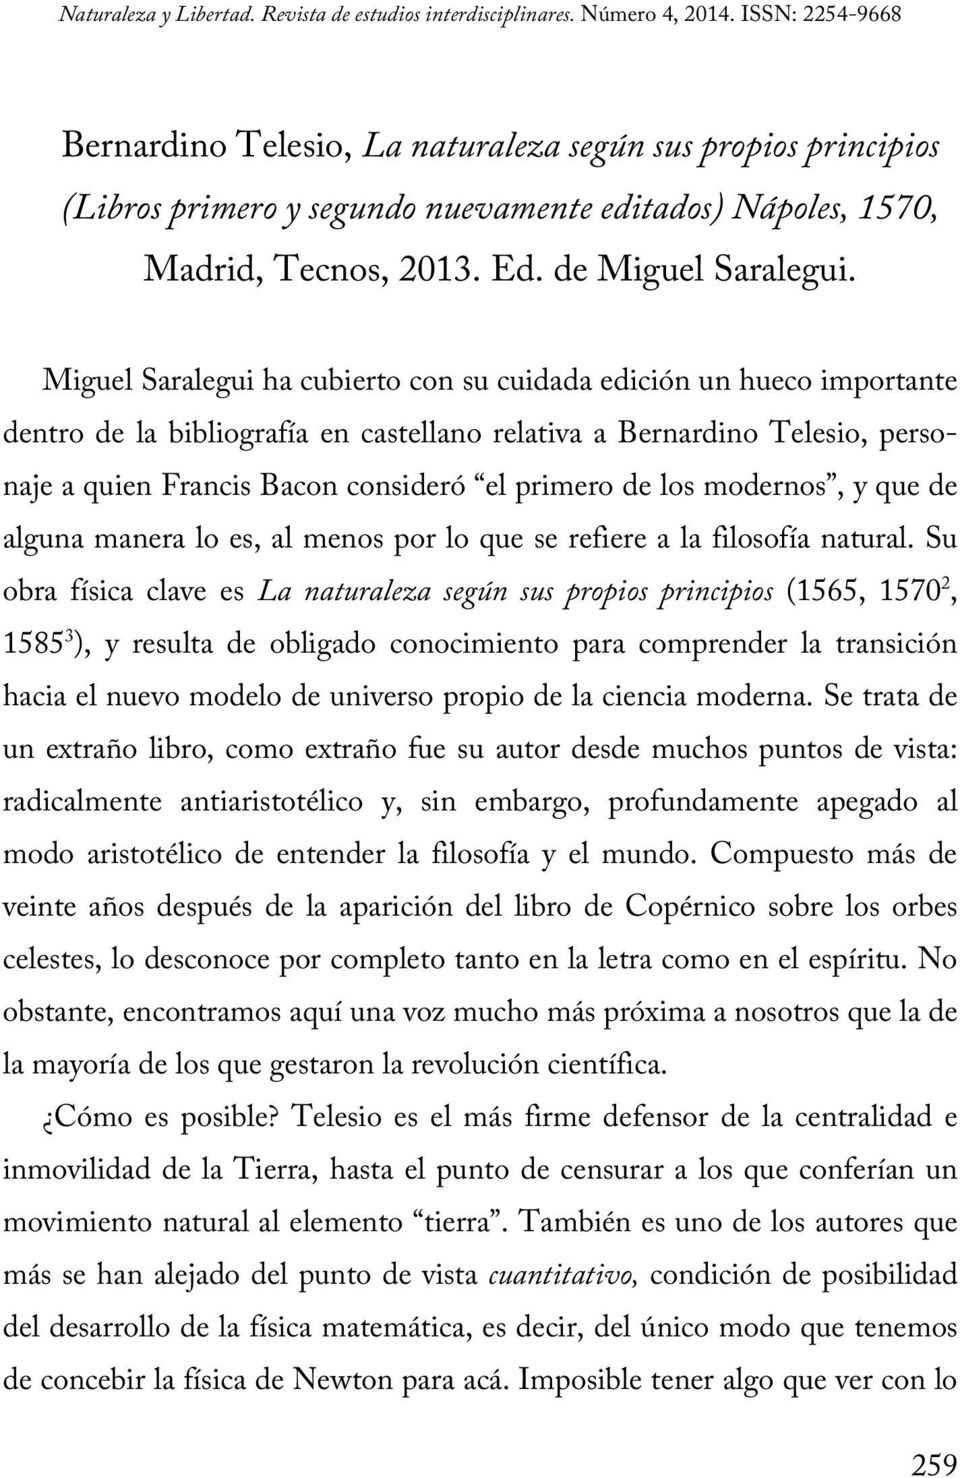 Miguel Saralegui ha cubierto con su cuidada edición un hueco importante dentro de la bibliografía en castellano relativa a Bernardino Telesio, personaje a quien Francis Bacon consideró el primero de